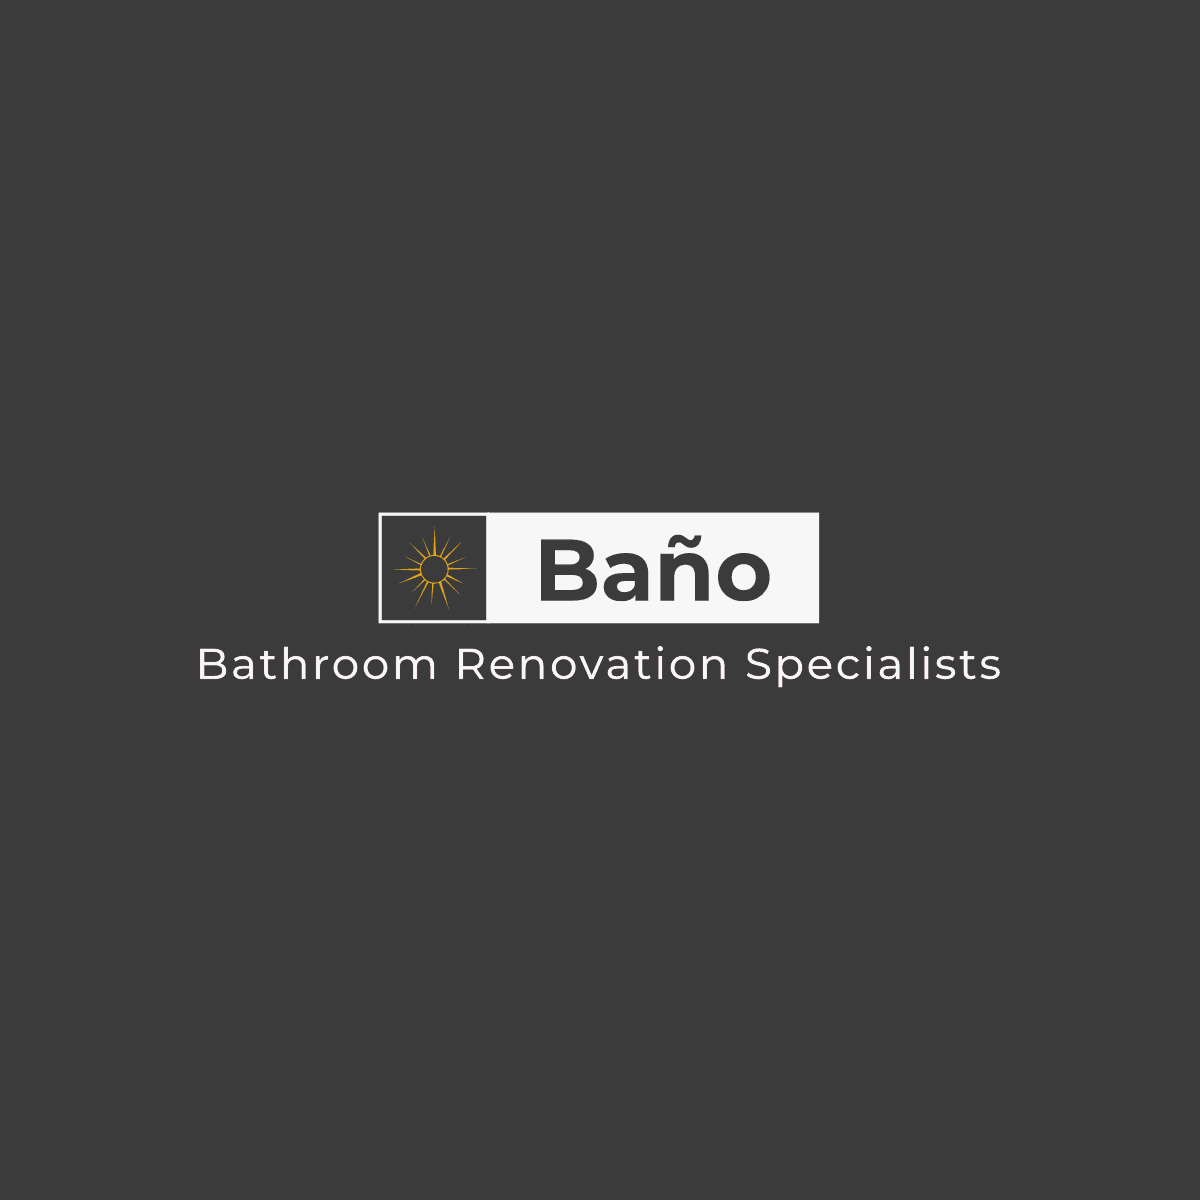 Bano Bathroom Renovation Specialists Logo